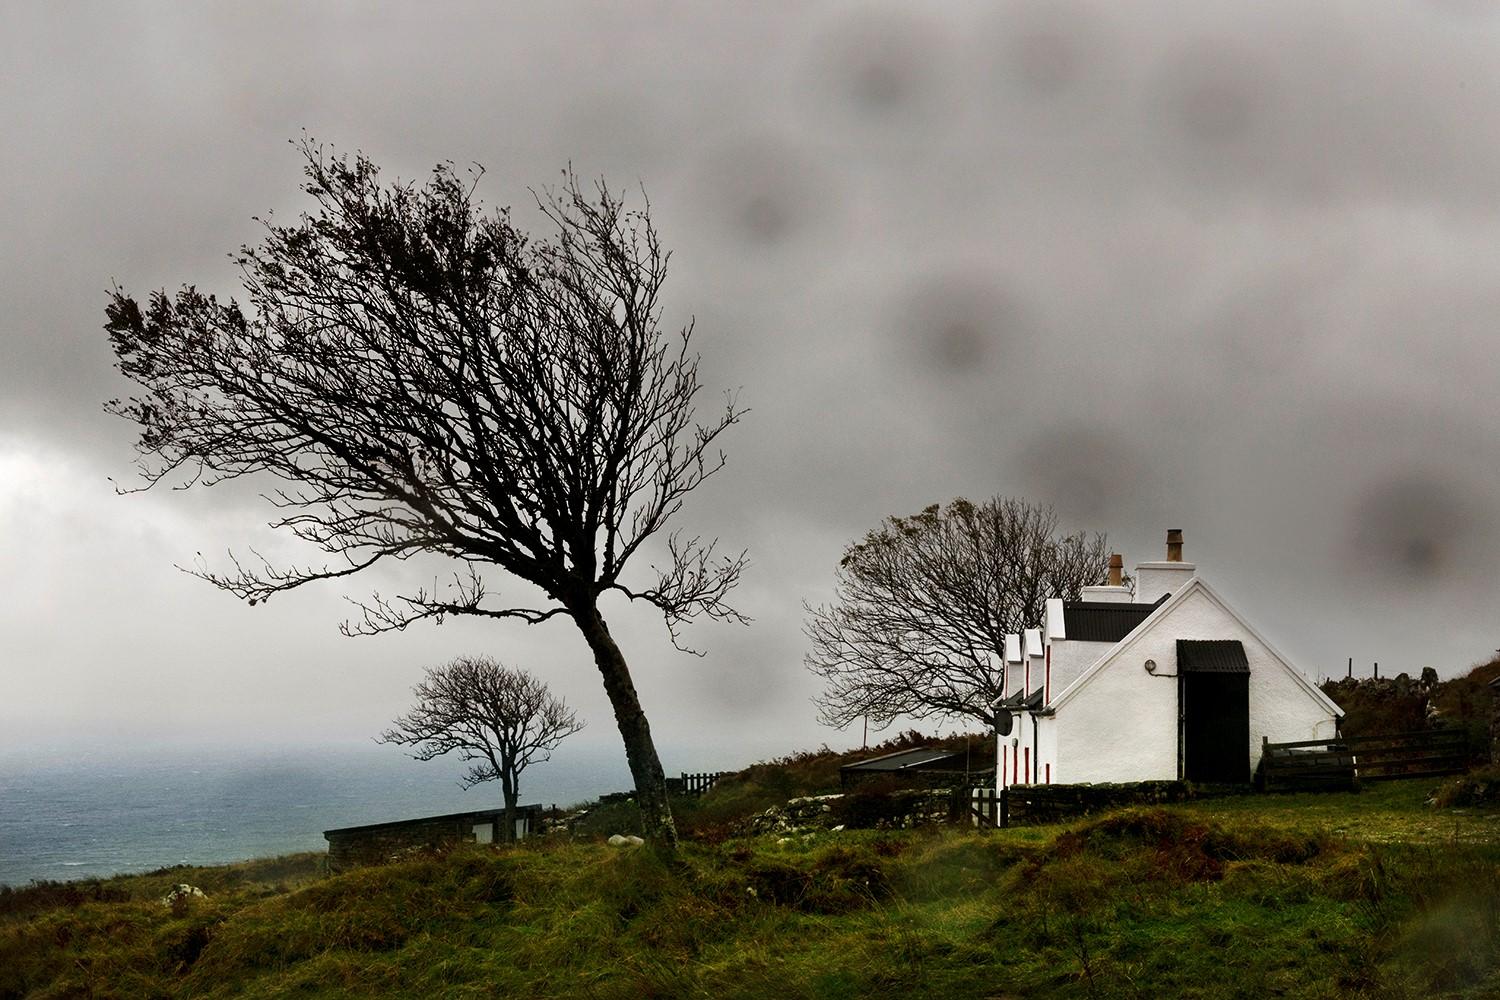 Storm (Wet Scotland) by Christophe Jacrot - landscape photography